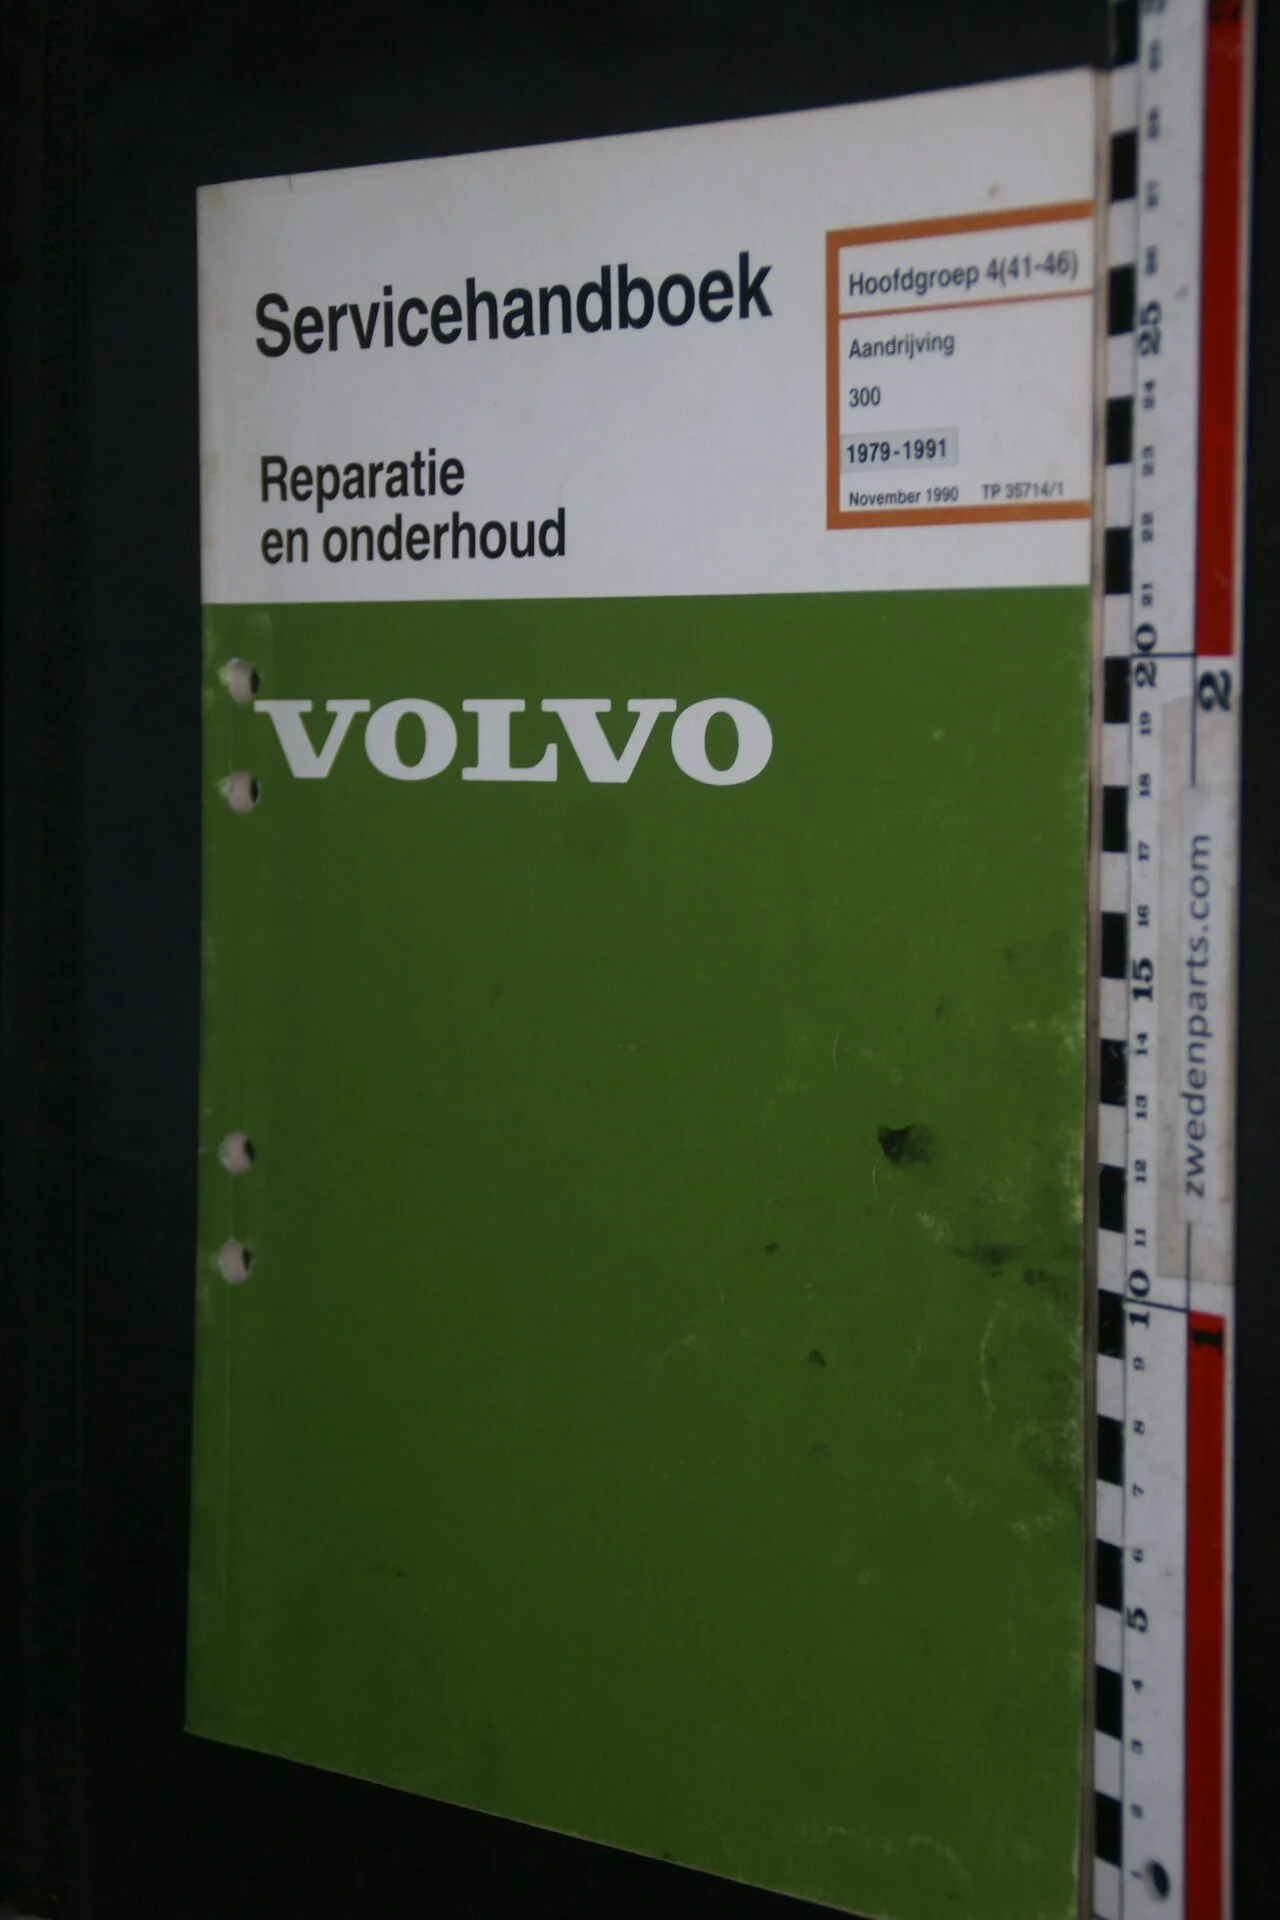 DSC09367 1990 origineel werkplaatsboek 4 (41-46) aandrijving Volvo 300  1 van 1.000 nr TP 35714-1